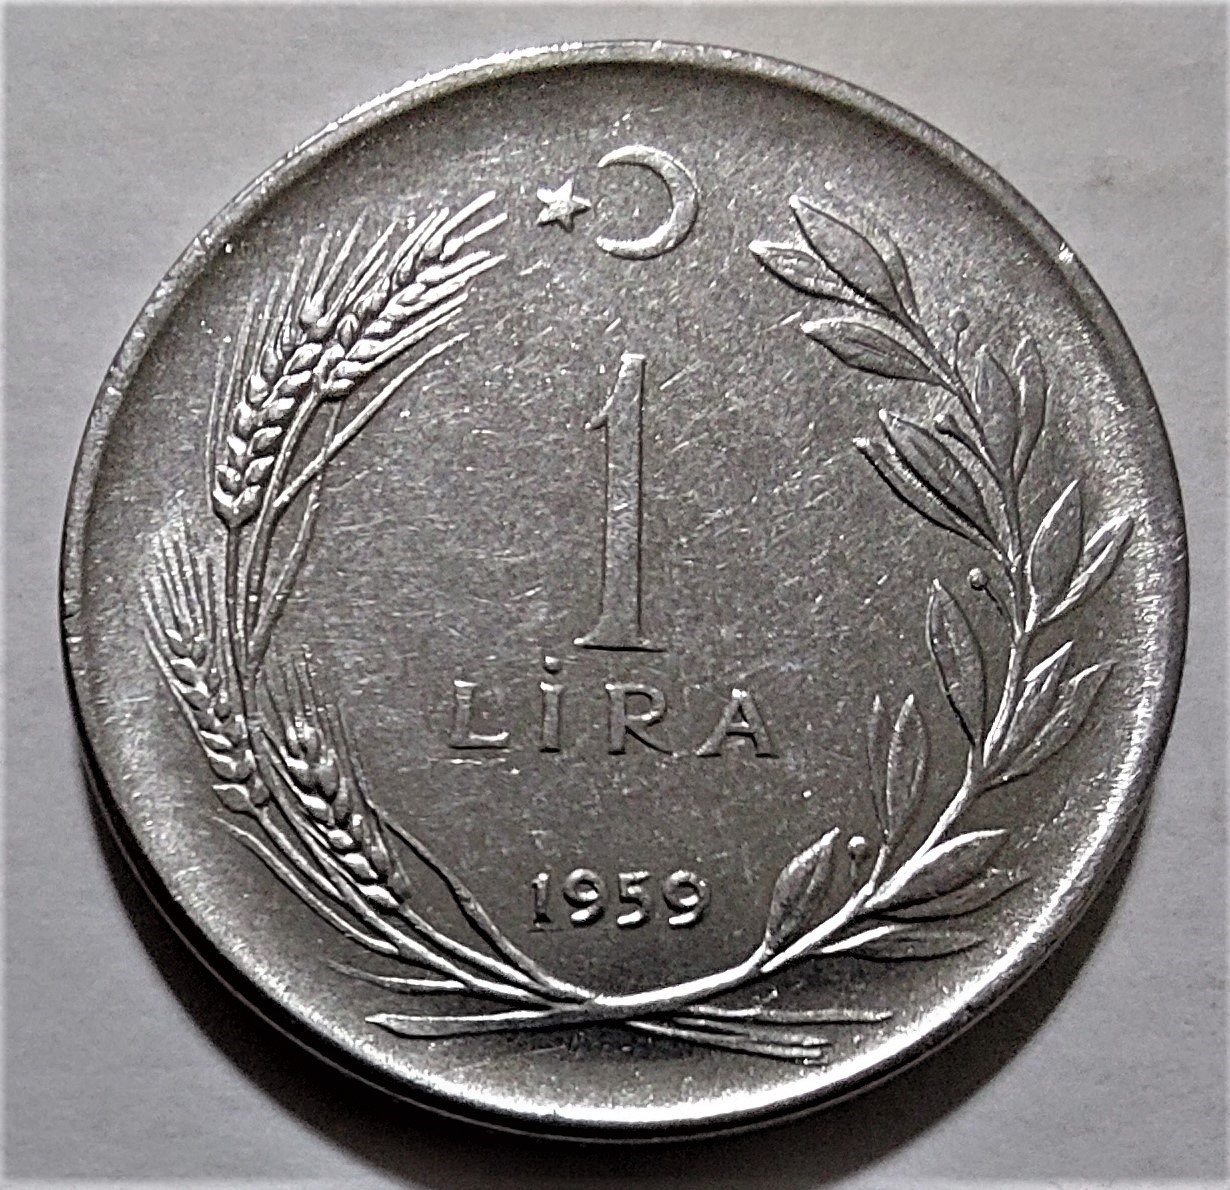 1 Lira 1959 Ön Yüz